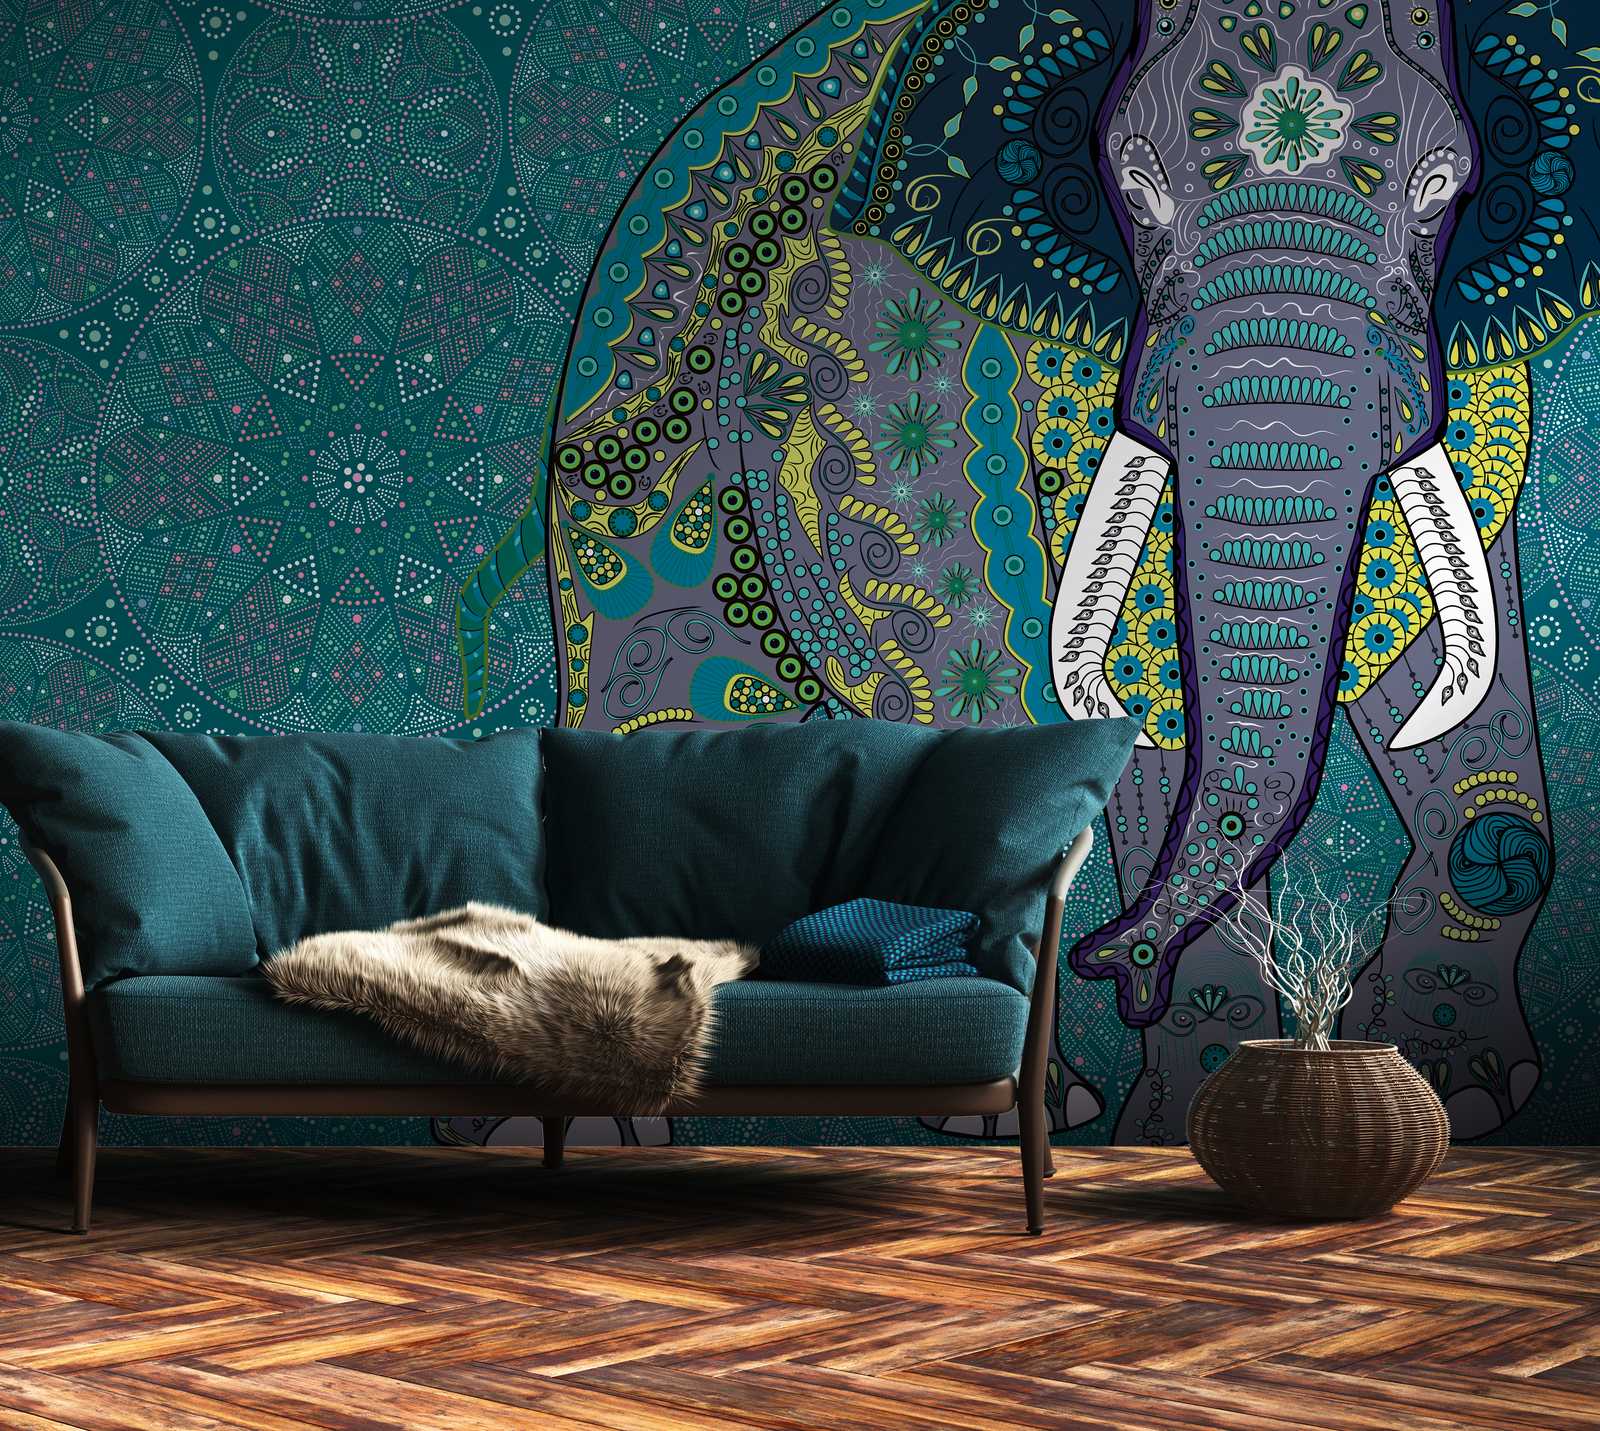             Papel pintado novedad | Papel pintado Elefante motivo Mandala en estilo indio
        